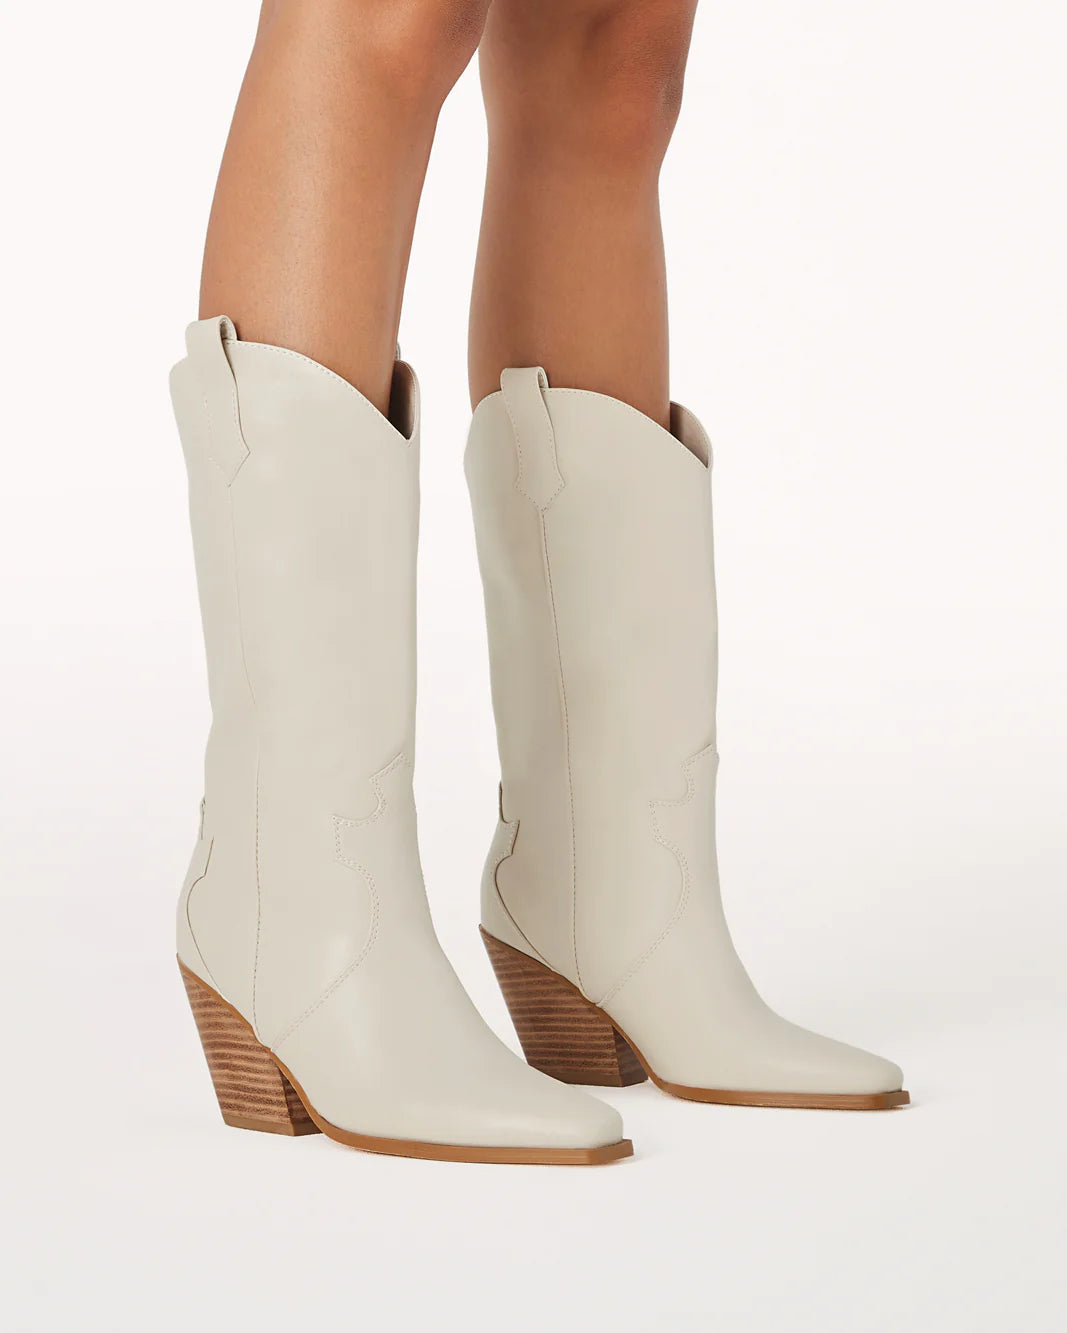 Claudette Western Boots